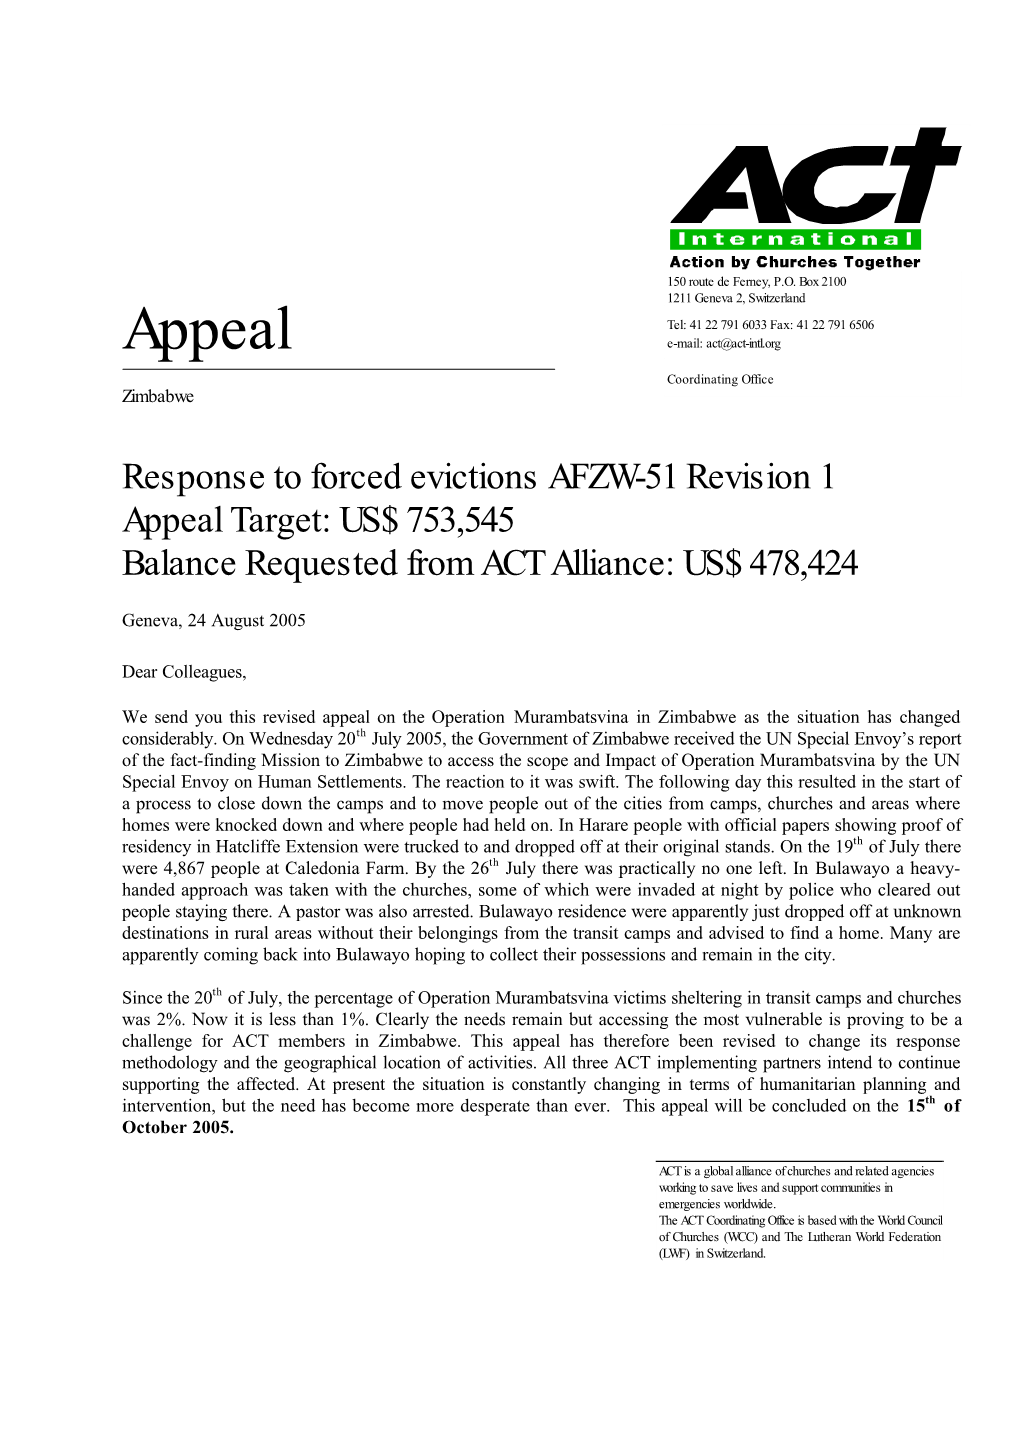 AFZW51 Appeal Rev 1